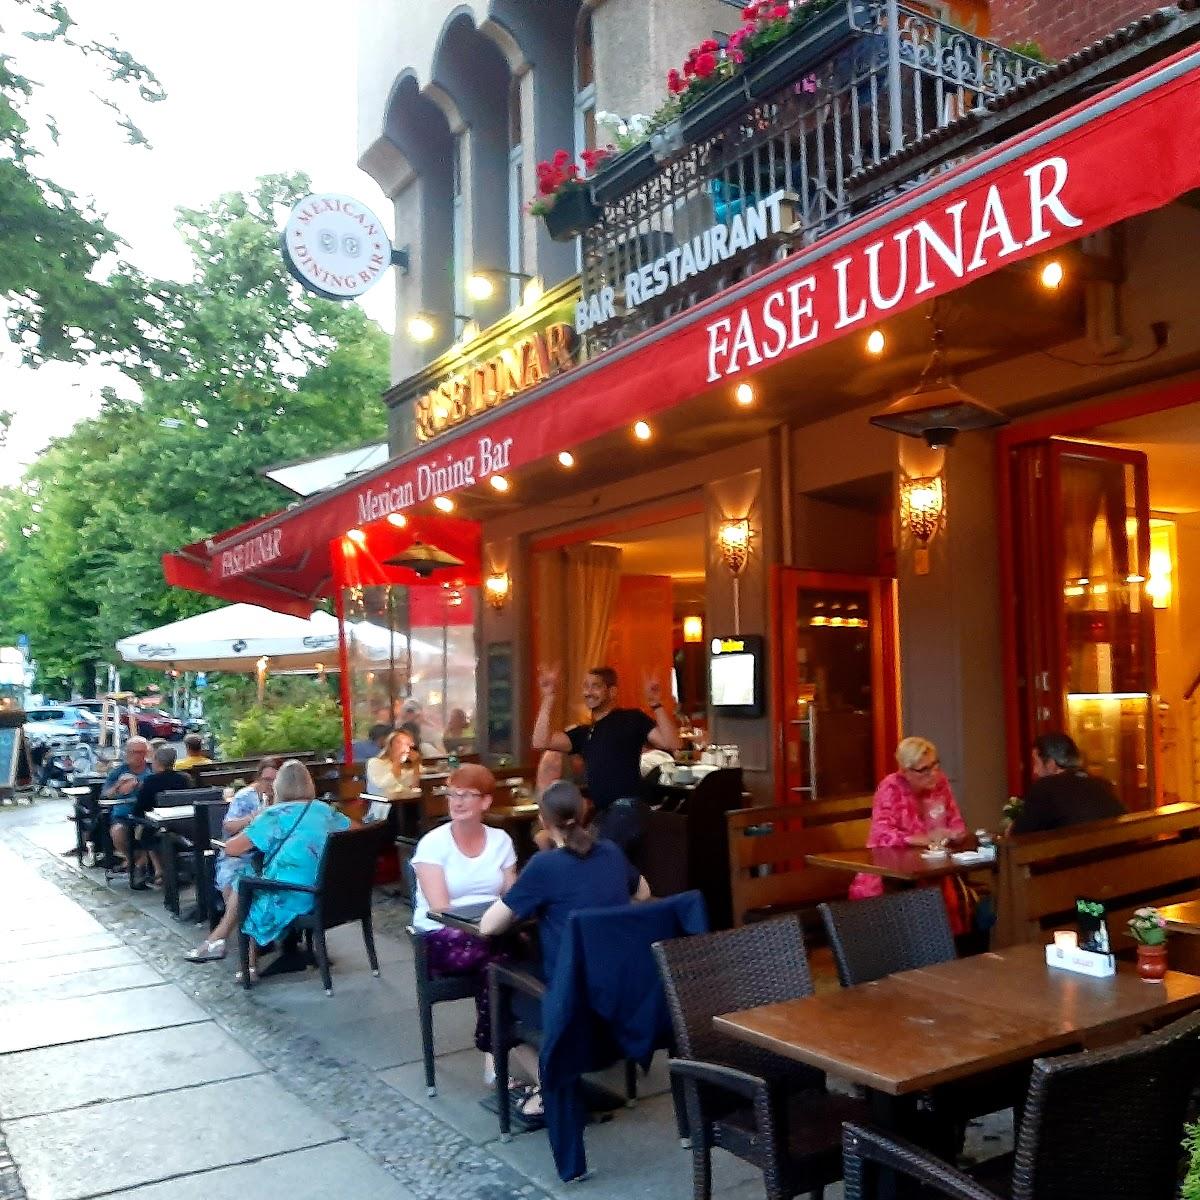 Restaurant "Fase Lunar" in Berlin